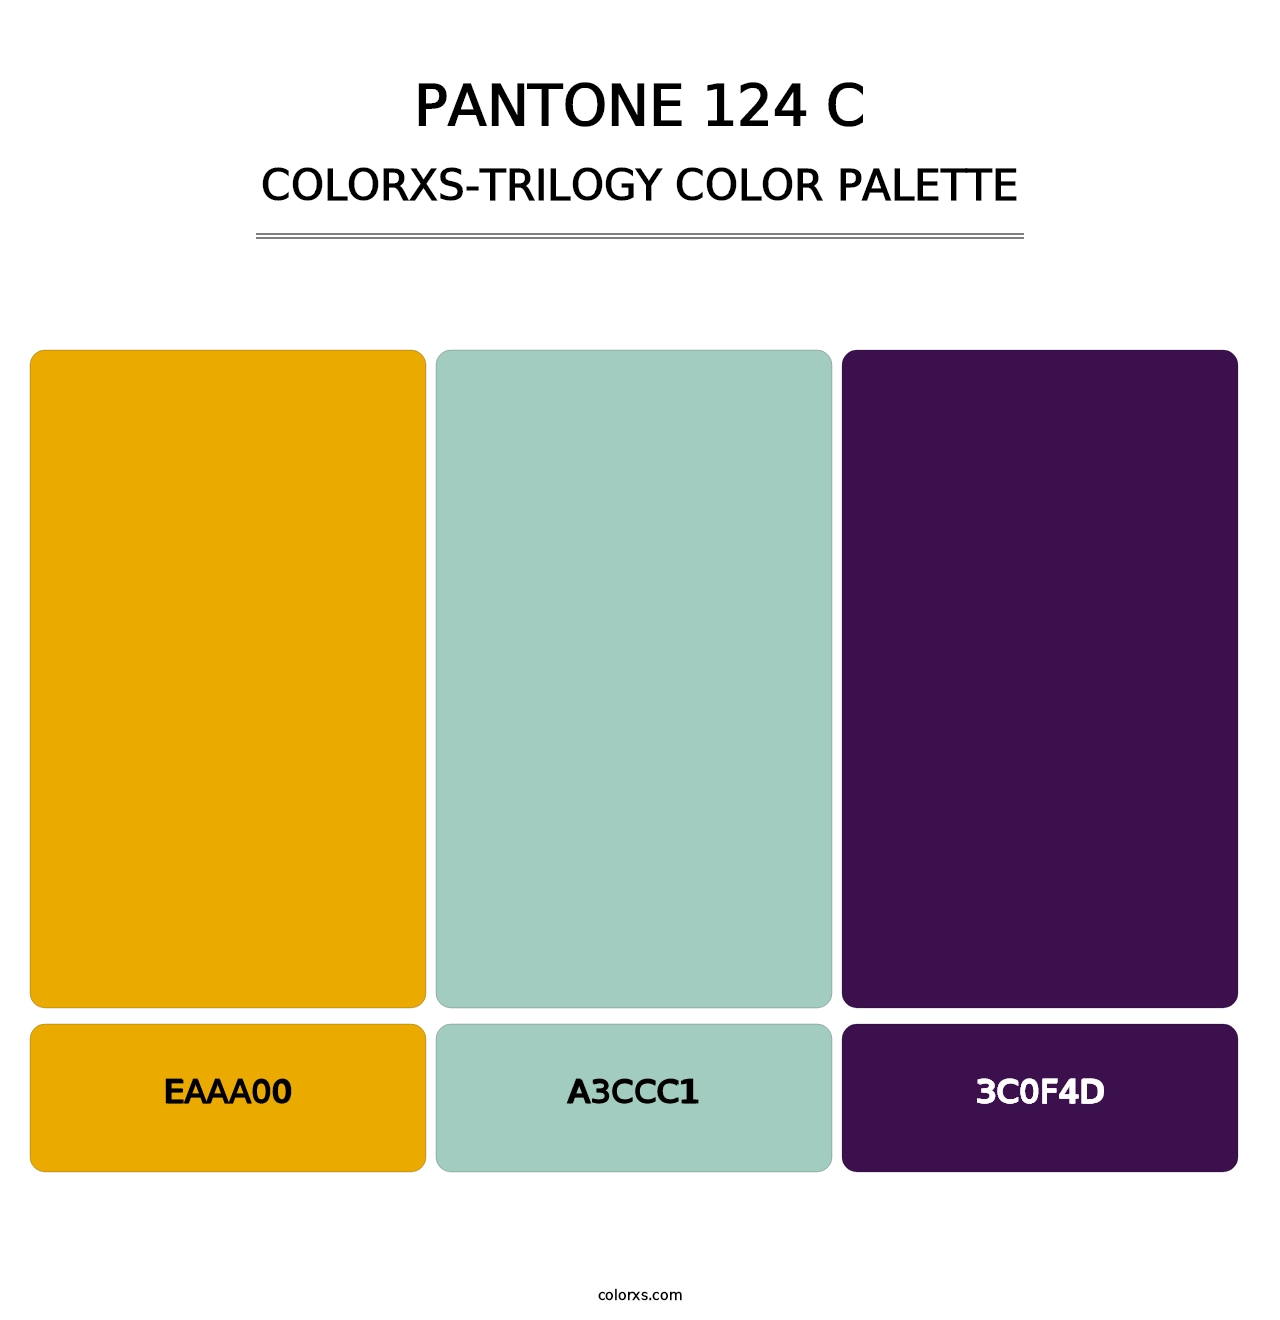 PANTONE 124 C - Colorxs Trilogy Palette